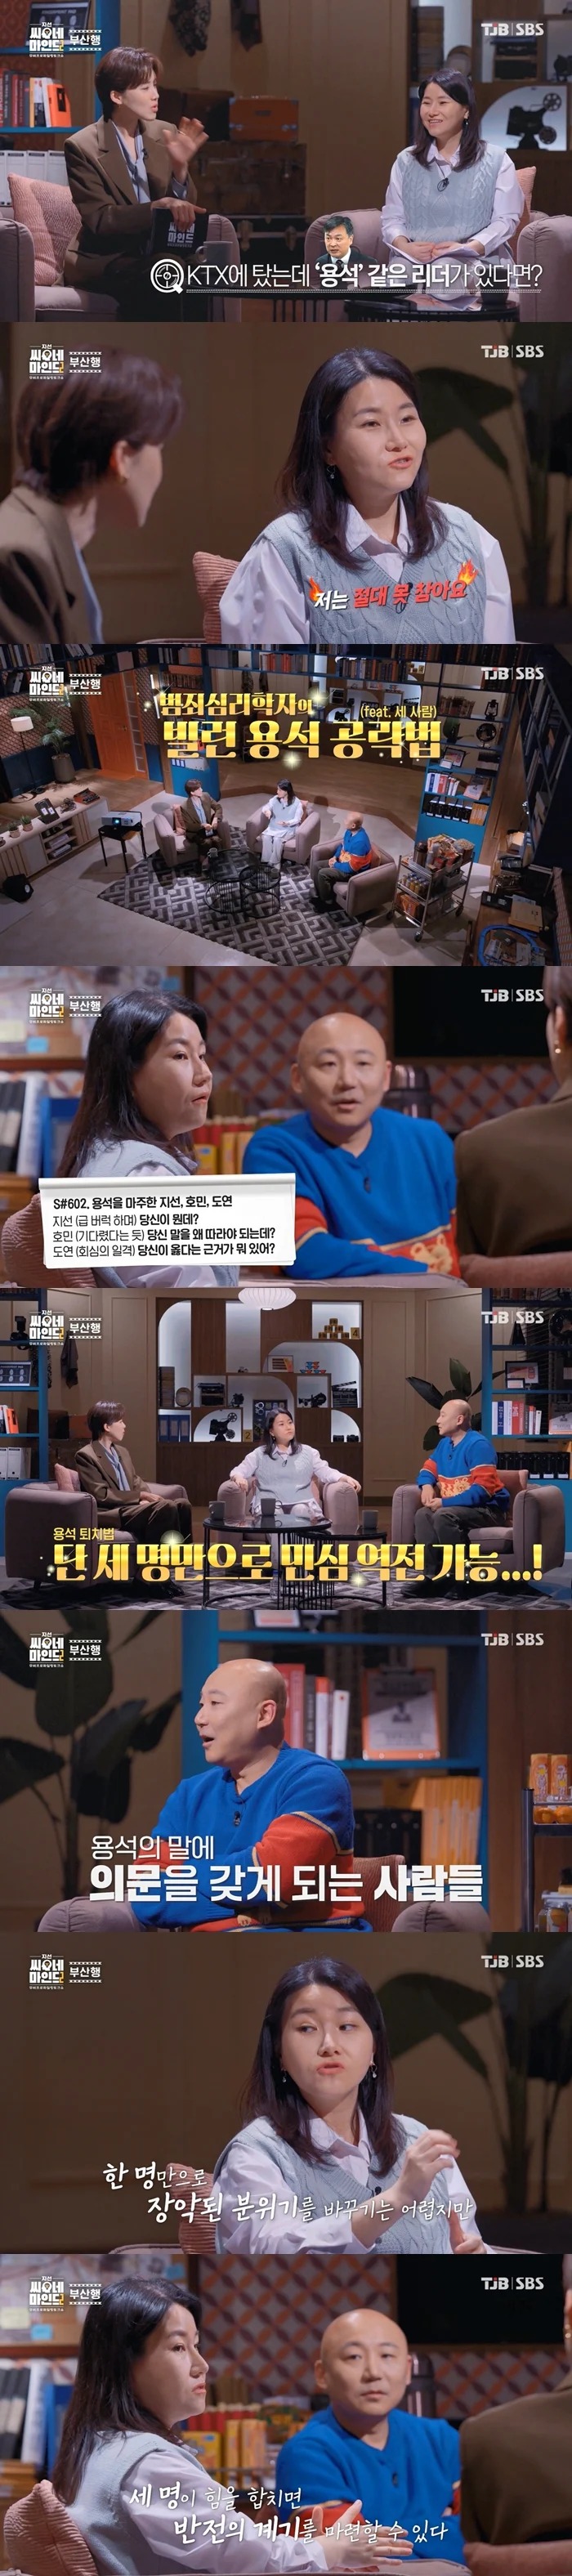 박지선 교수님이 알려주는 부산행 빌런(김의성) 공략법